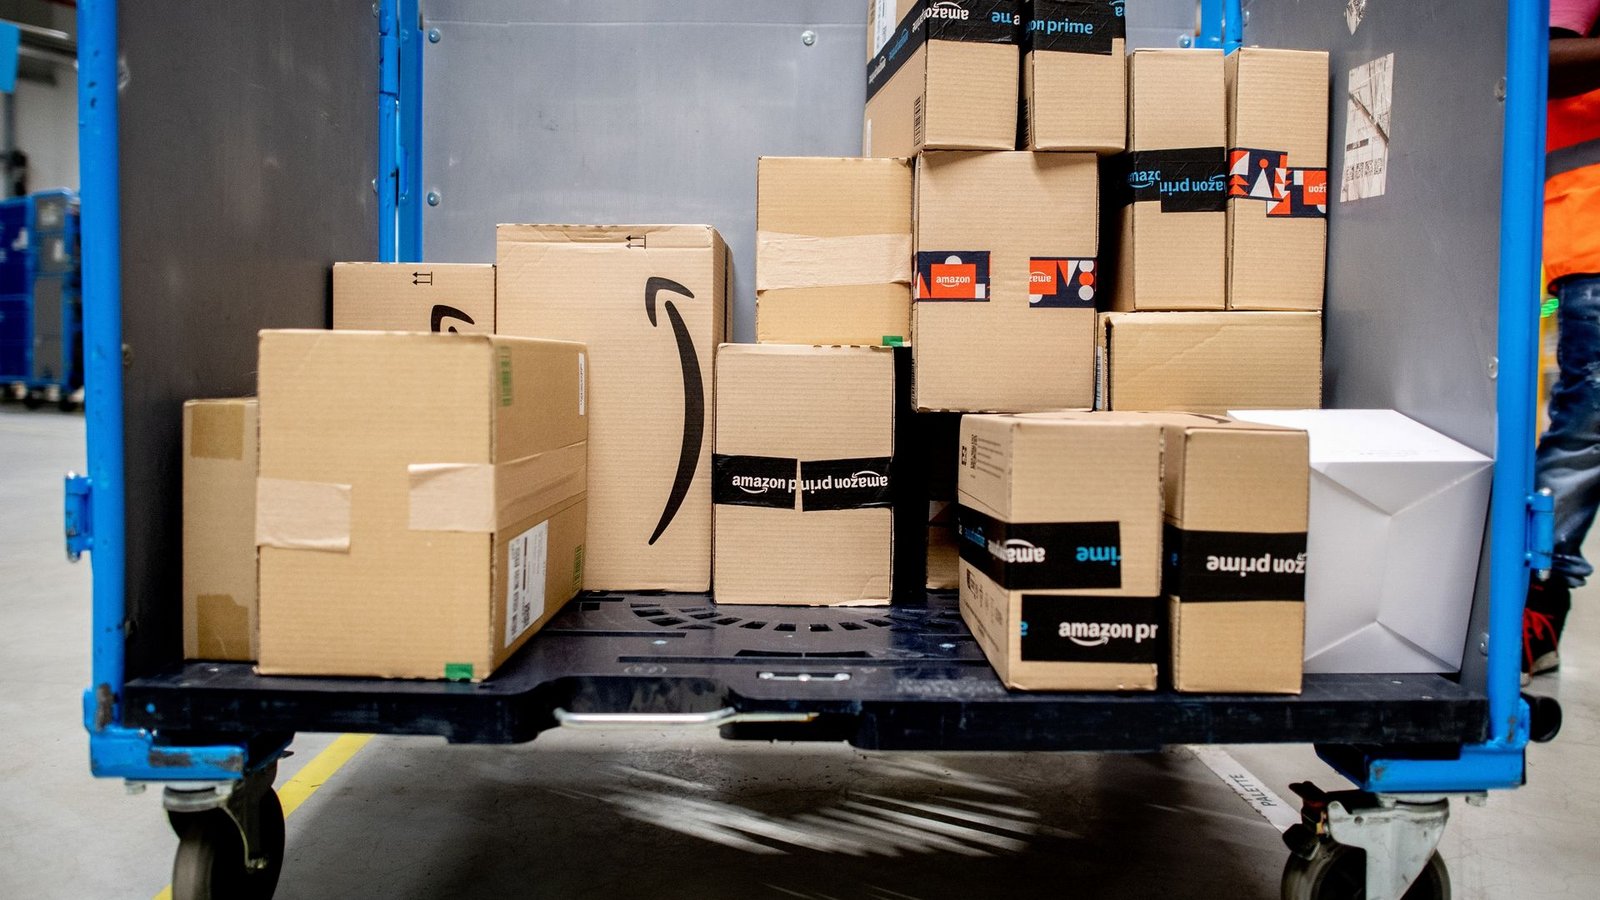 Amazon ist der weltgrößte Online-Händler.Foto: Hauke-Christian Dittrich/dpa